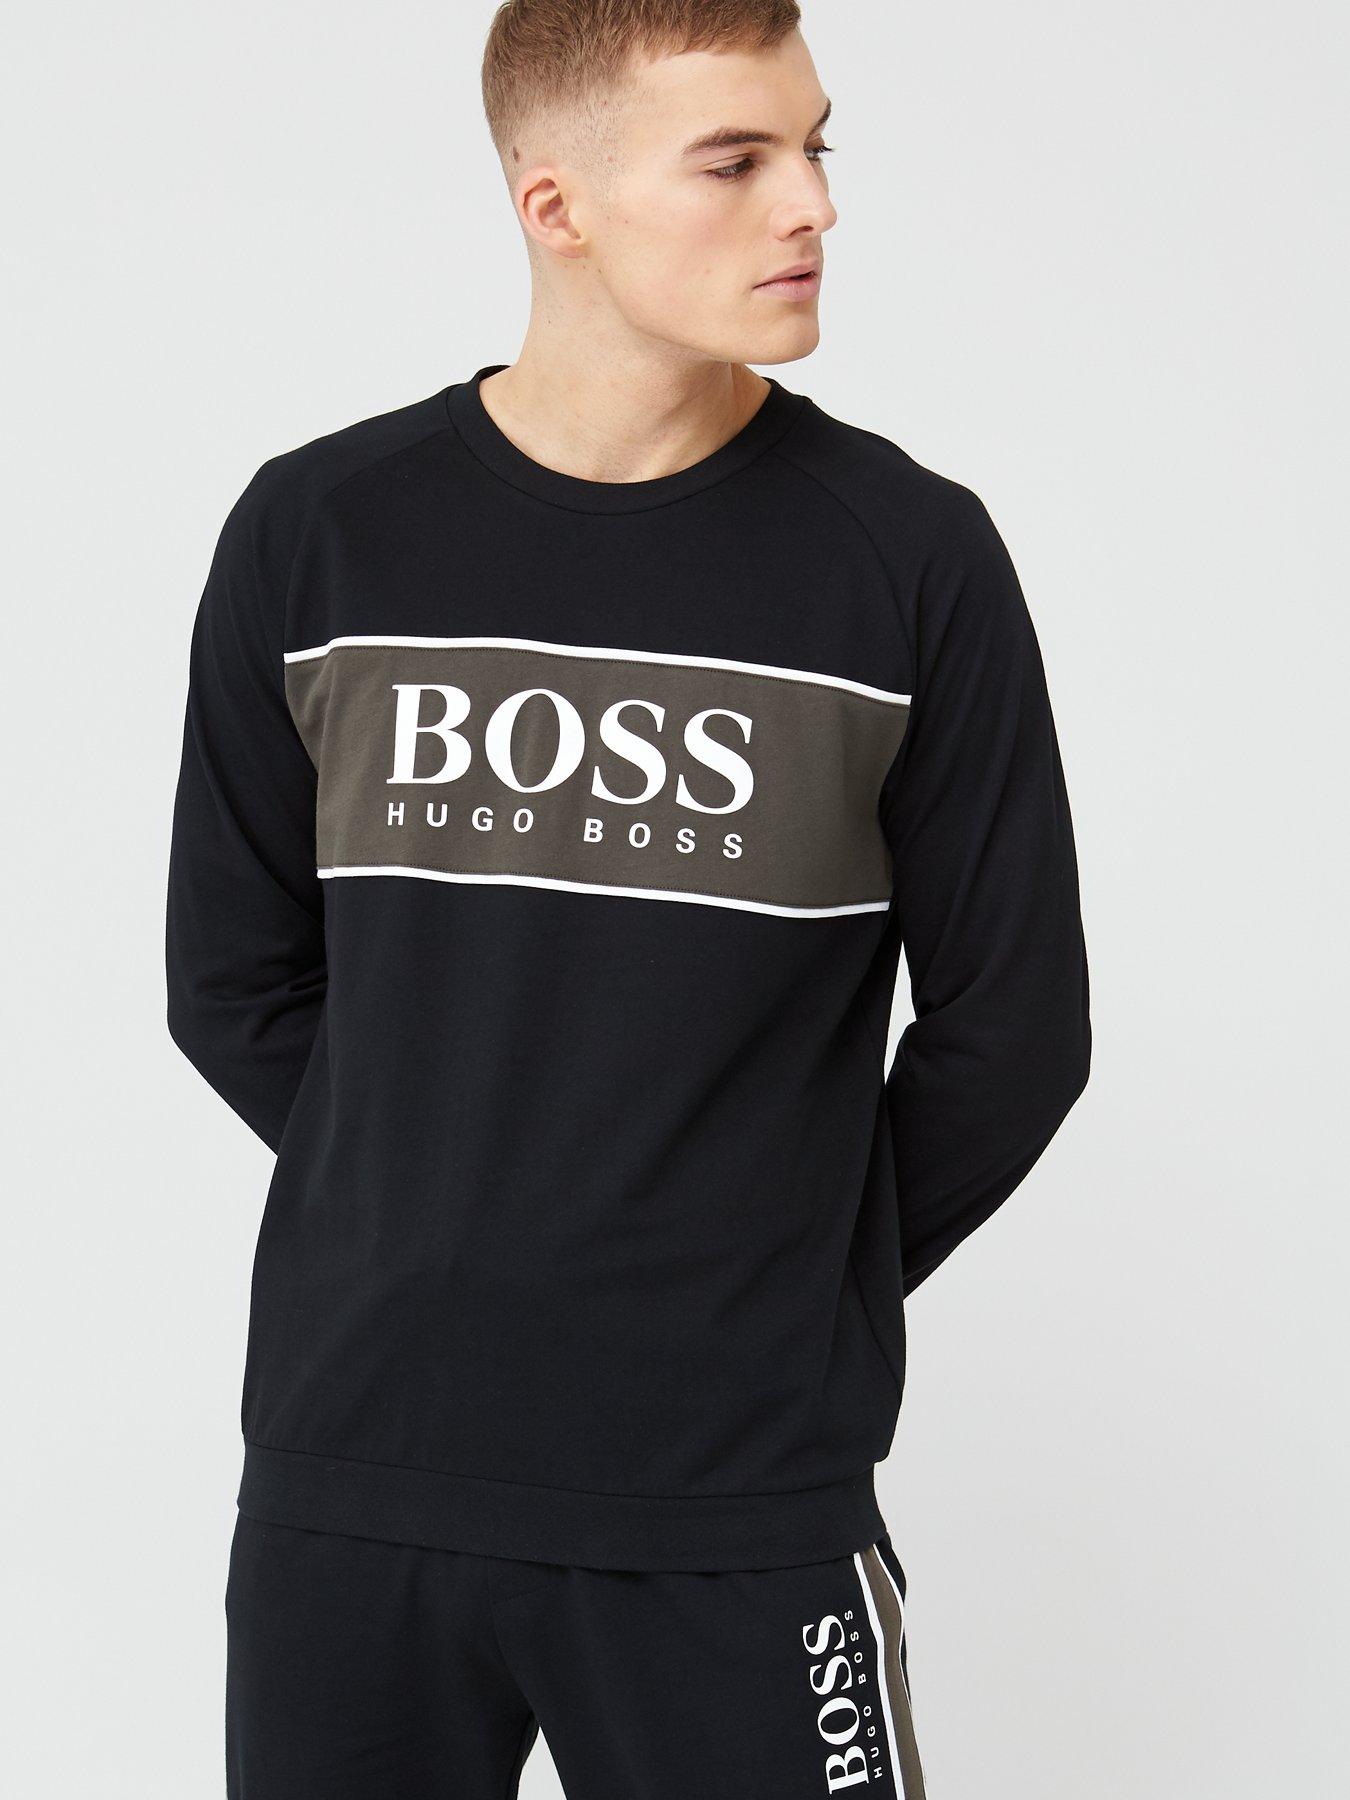 boss bodywear logo crew sweatshirt